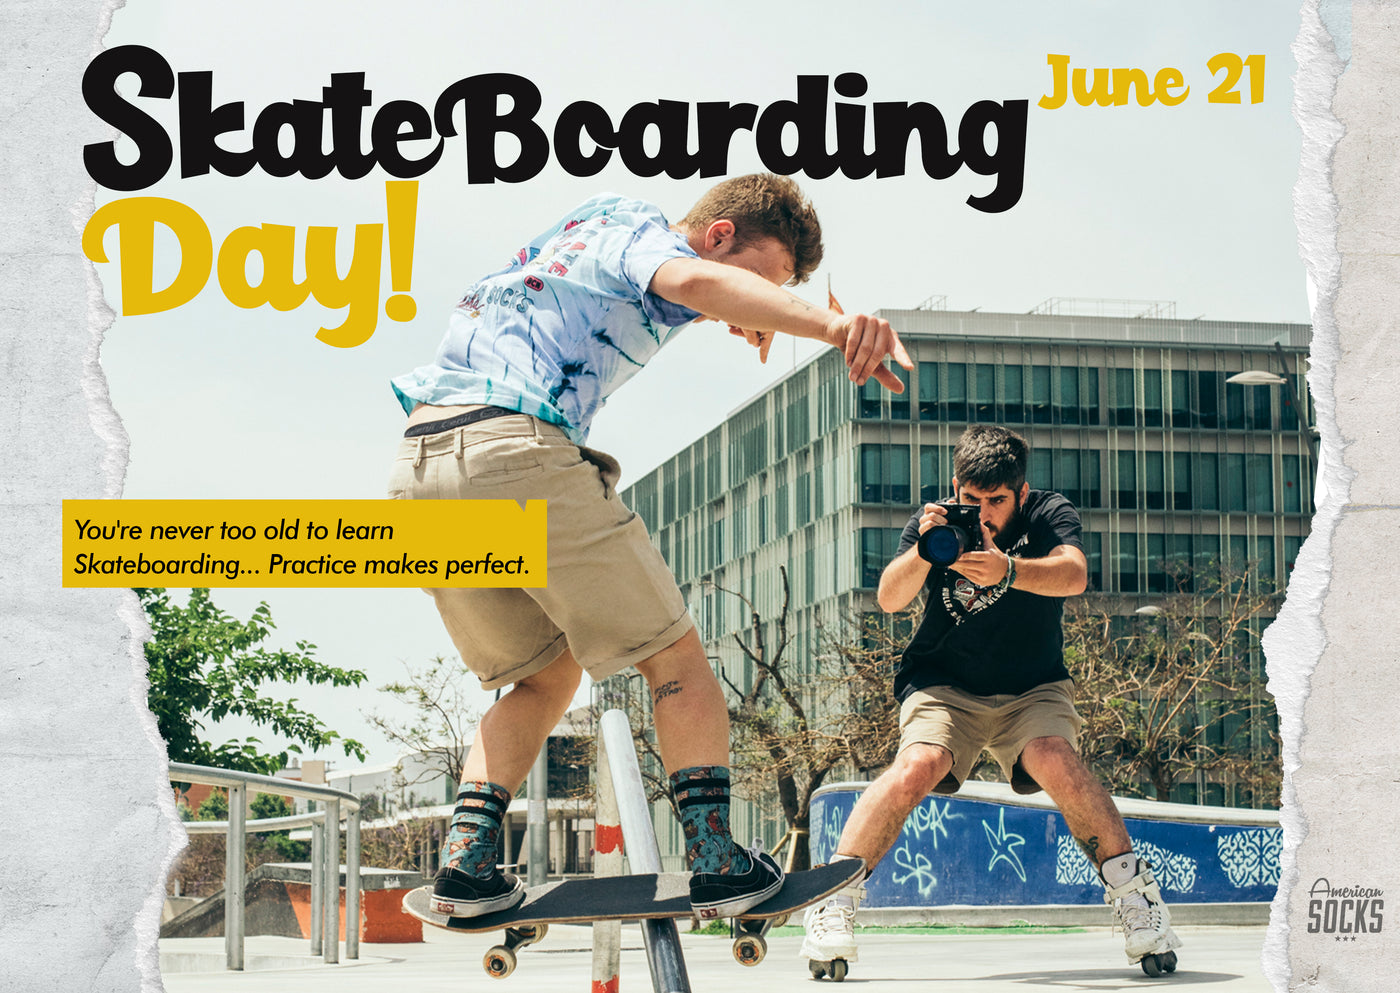 Happy International Skateboarding Day! 🛹